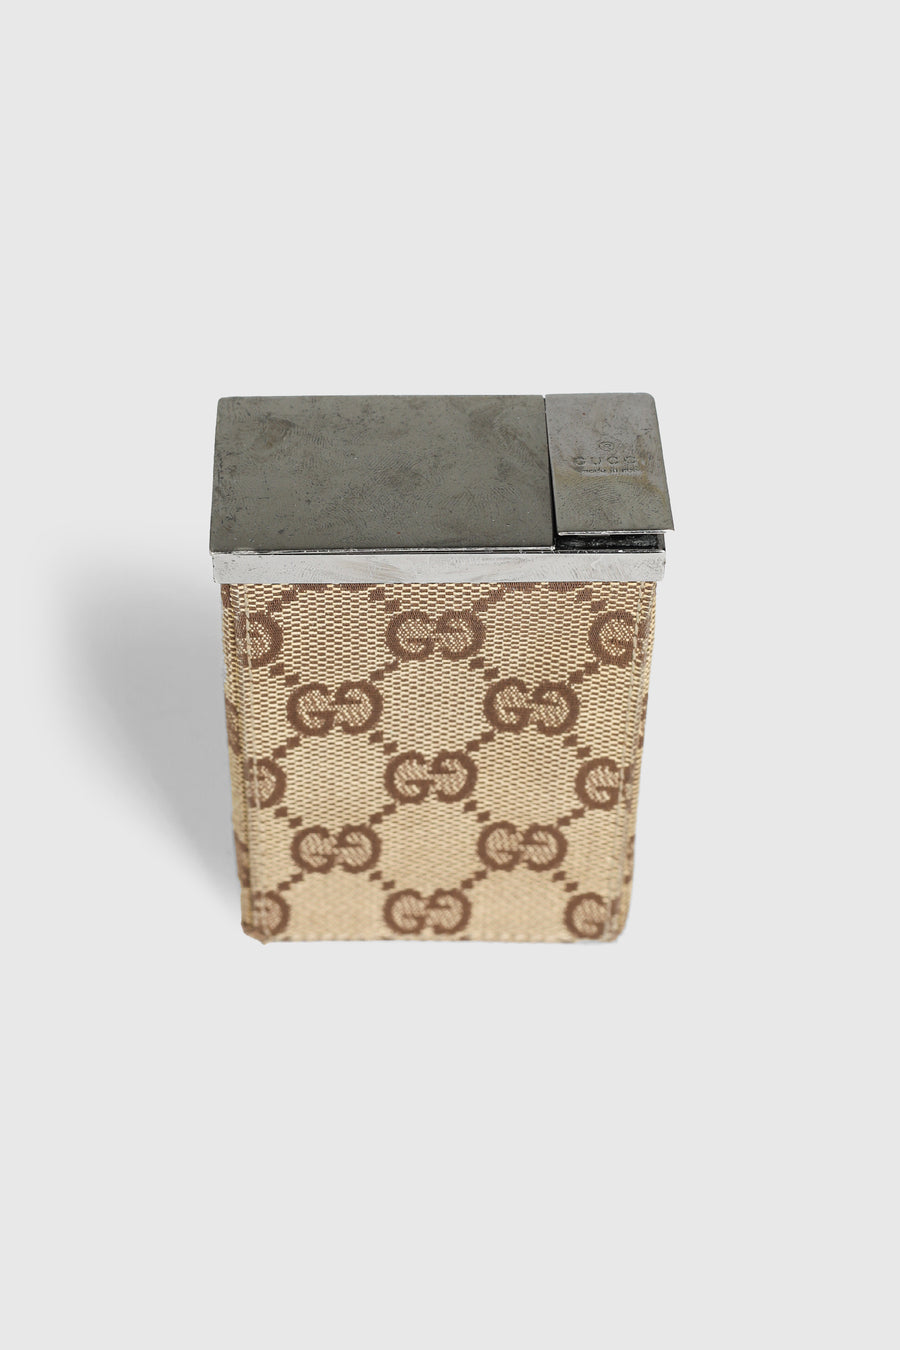 Vintage Gucci Cigarette Box